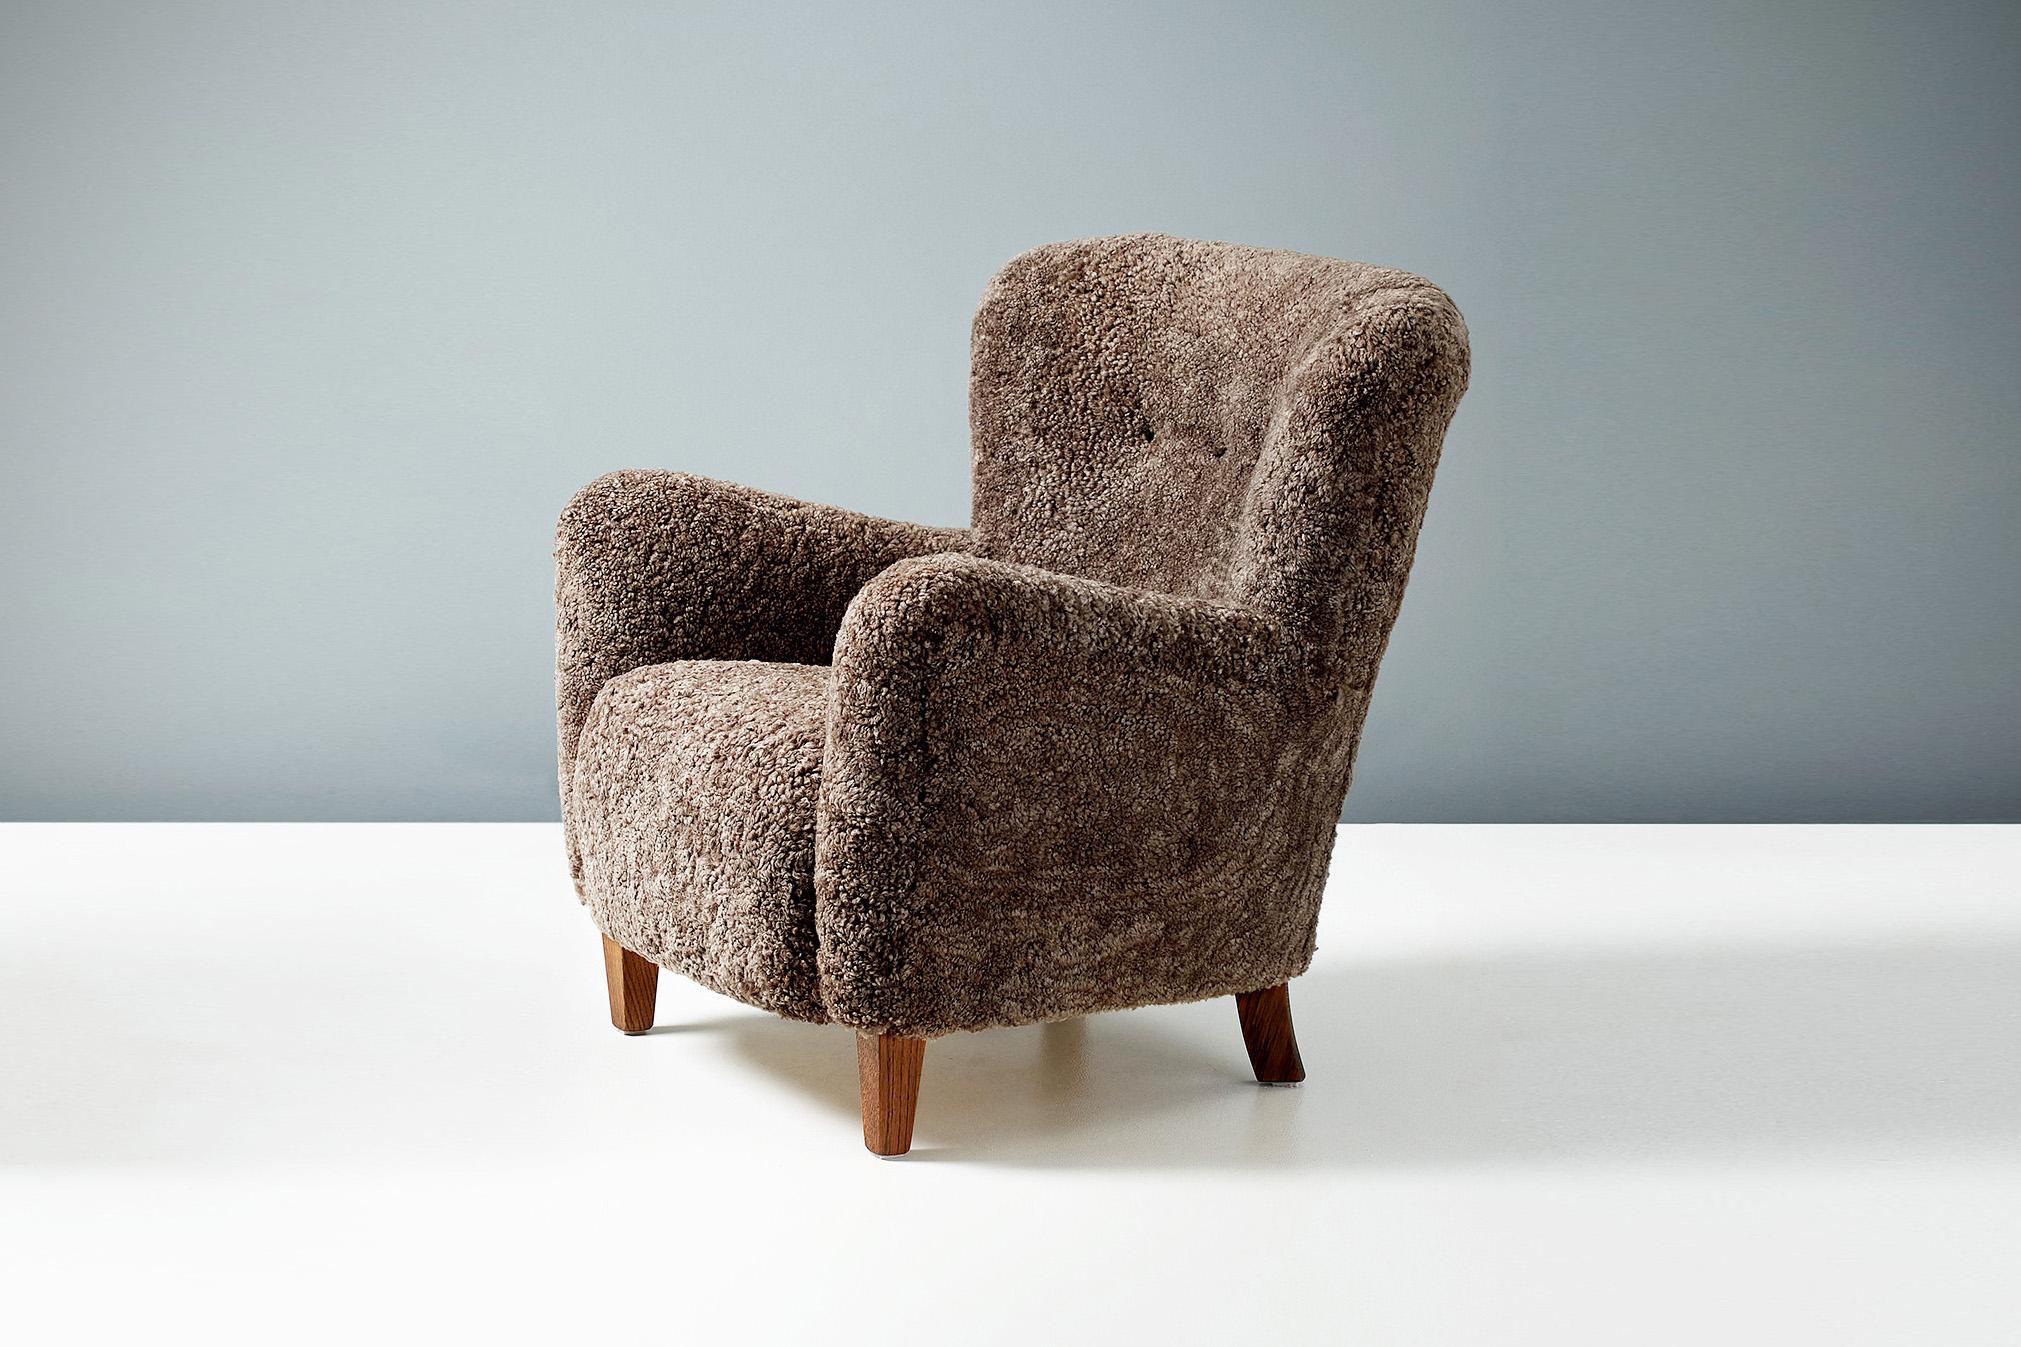 Dagmar Design - Chaise longue Ryo

La chaise longue Ryo fait partie de notre gamme de meubles rembourrés sur mesure. Cette pièce a été conçue et fabriquée à la main dans nos ateliers de Londres, avec des matériaux de la plus haute qualité. Le